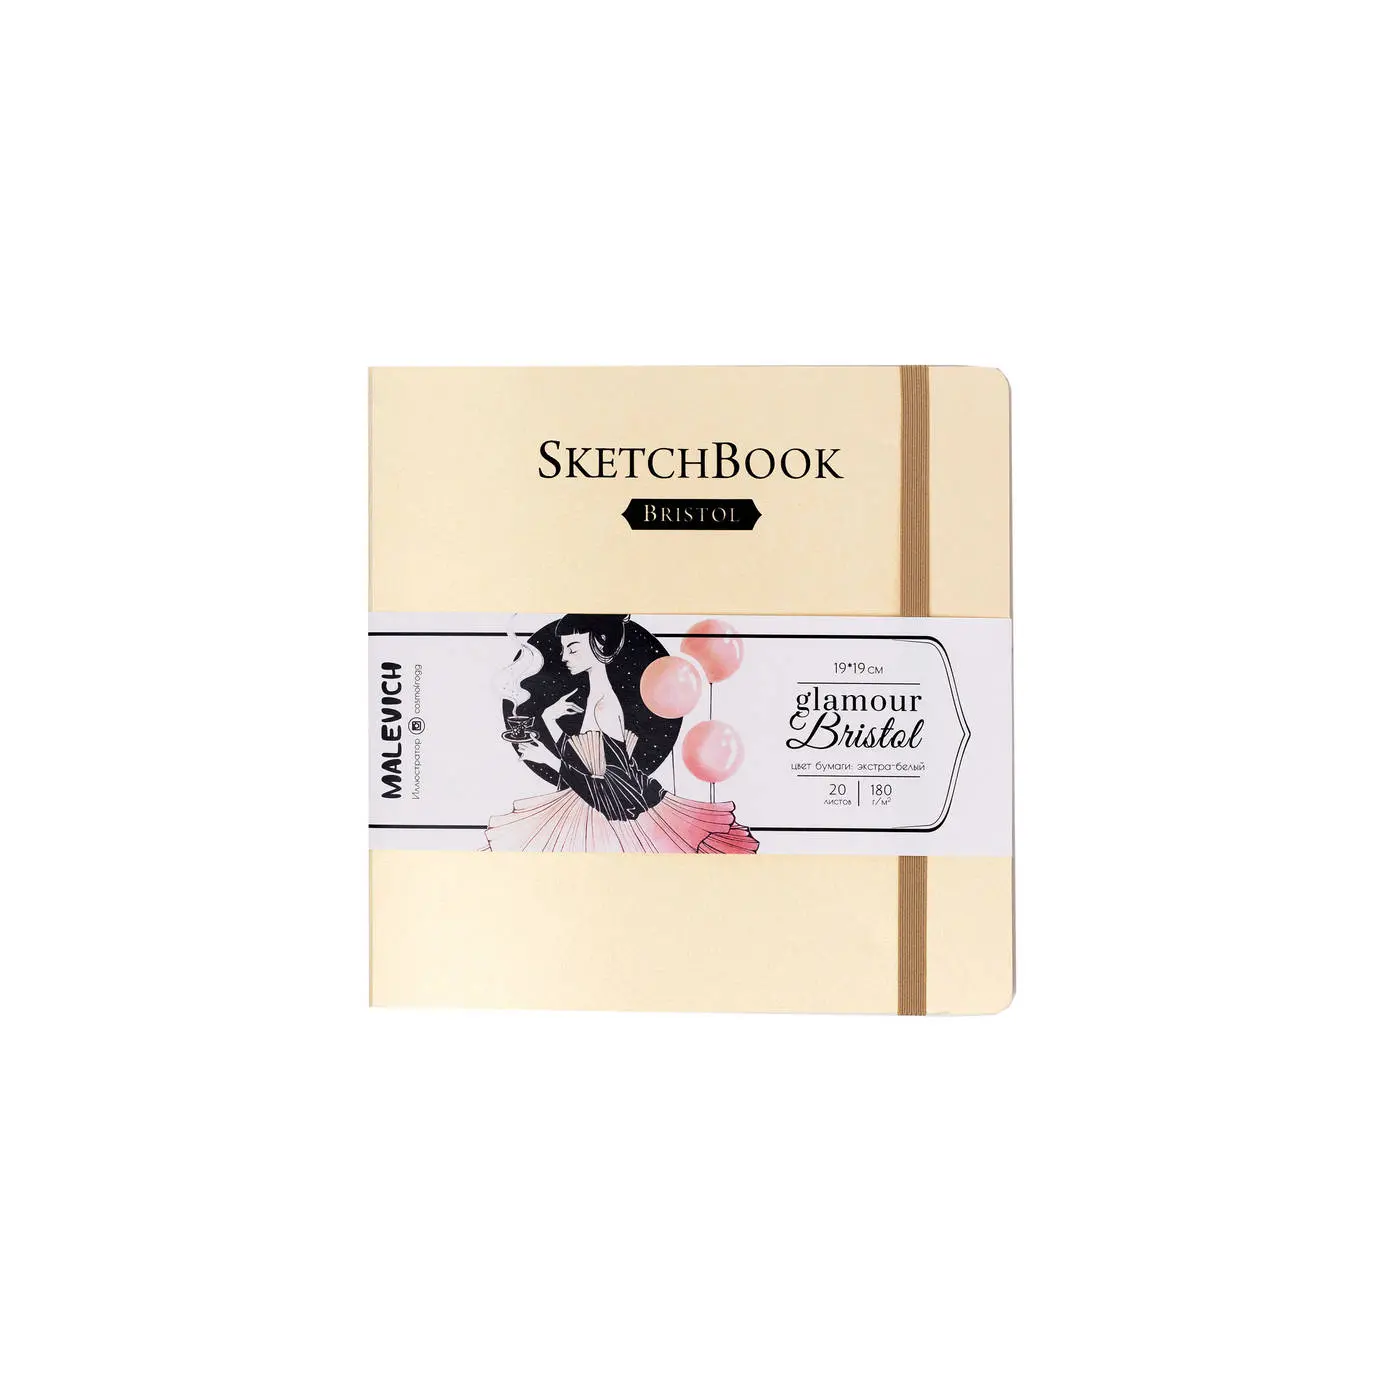 Скетчбук для графики и маркеров Малевичъ Bristol Glamour, кремовый, 180 г/м, 19х19 см, 20л